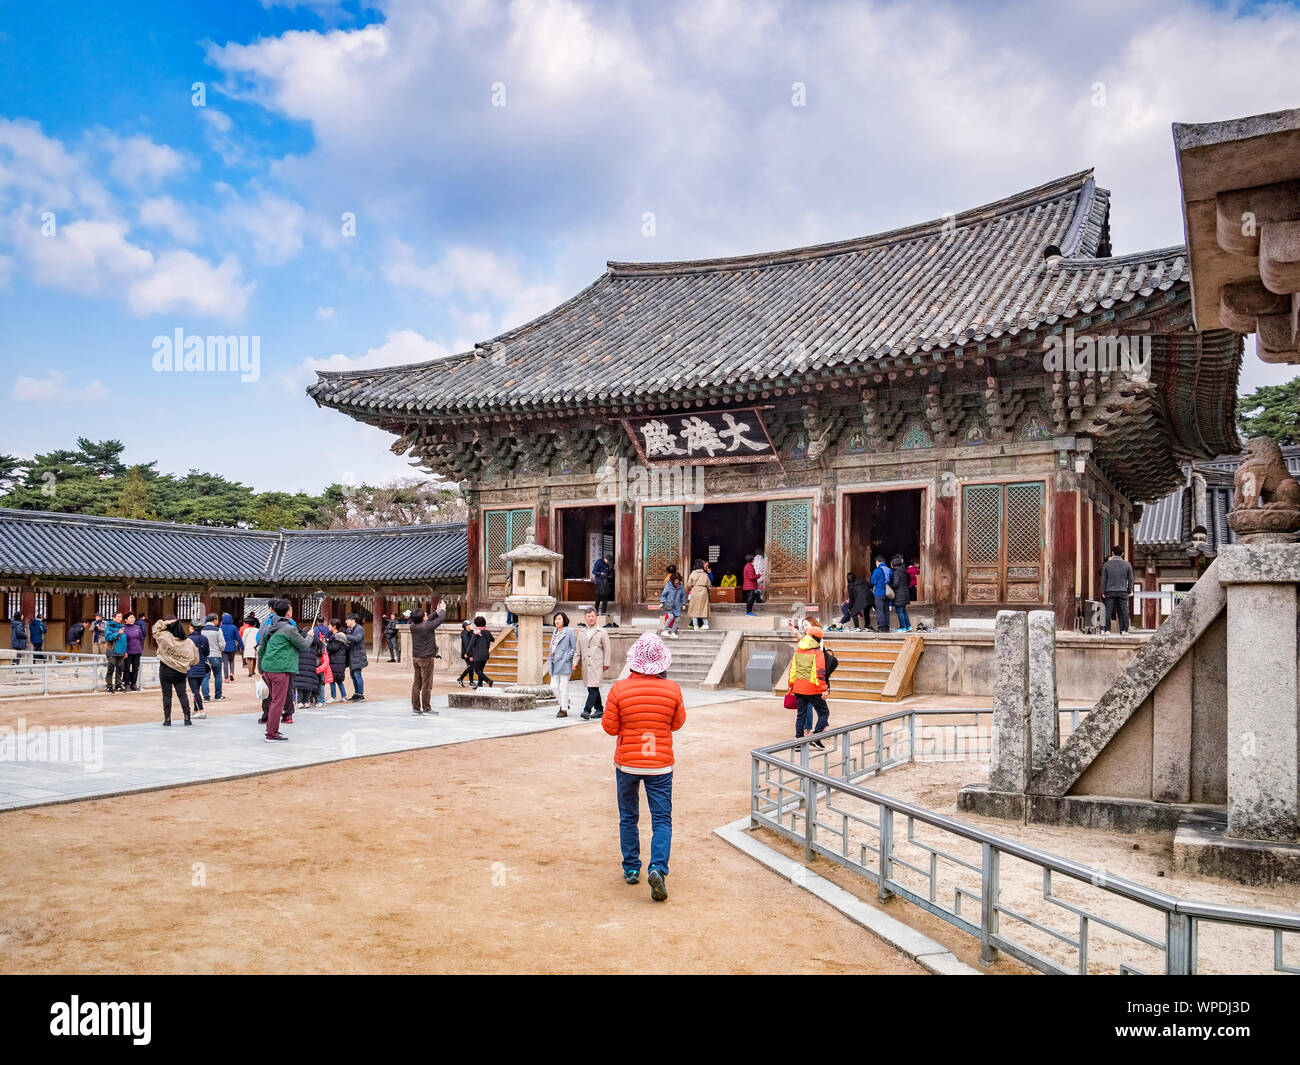 31 mars 2019 : Gyeong-Ju, Corée du Sud - les visiteurs à l'Bulguksa Temple Bouddhiste, Gyeong-Ju, site du patrimoine mondial de l'UNESCO. Banque D'Images